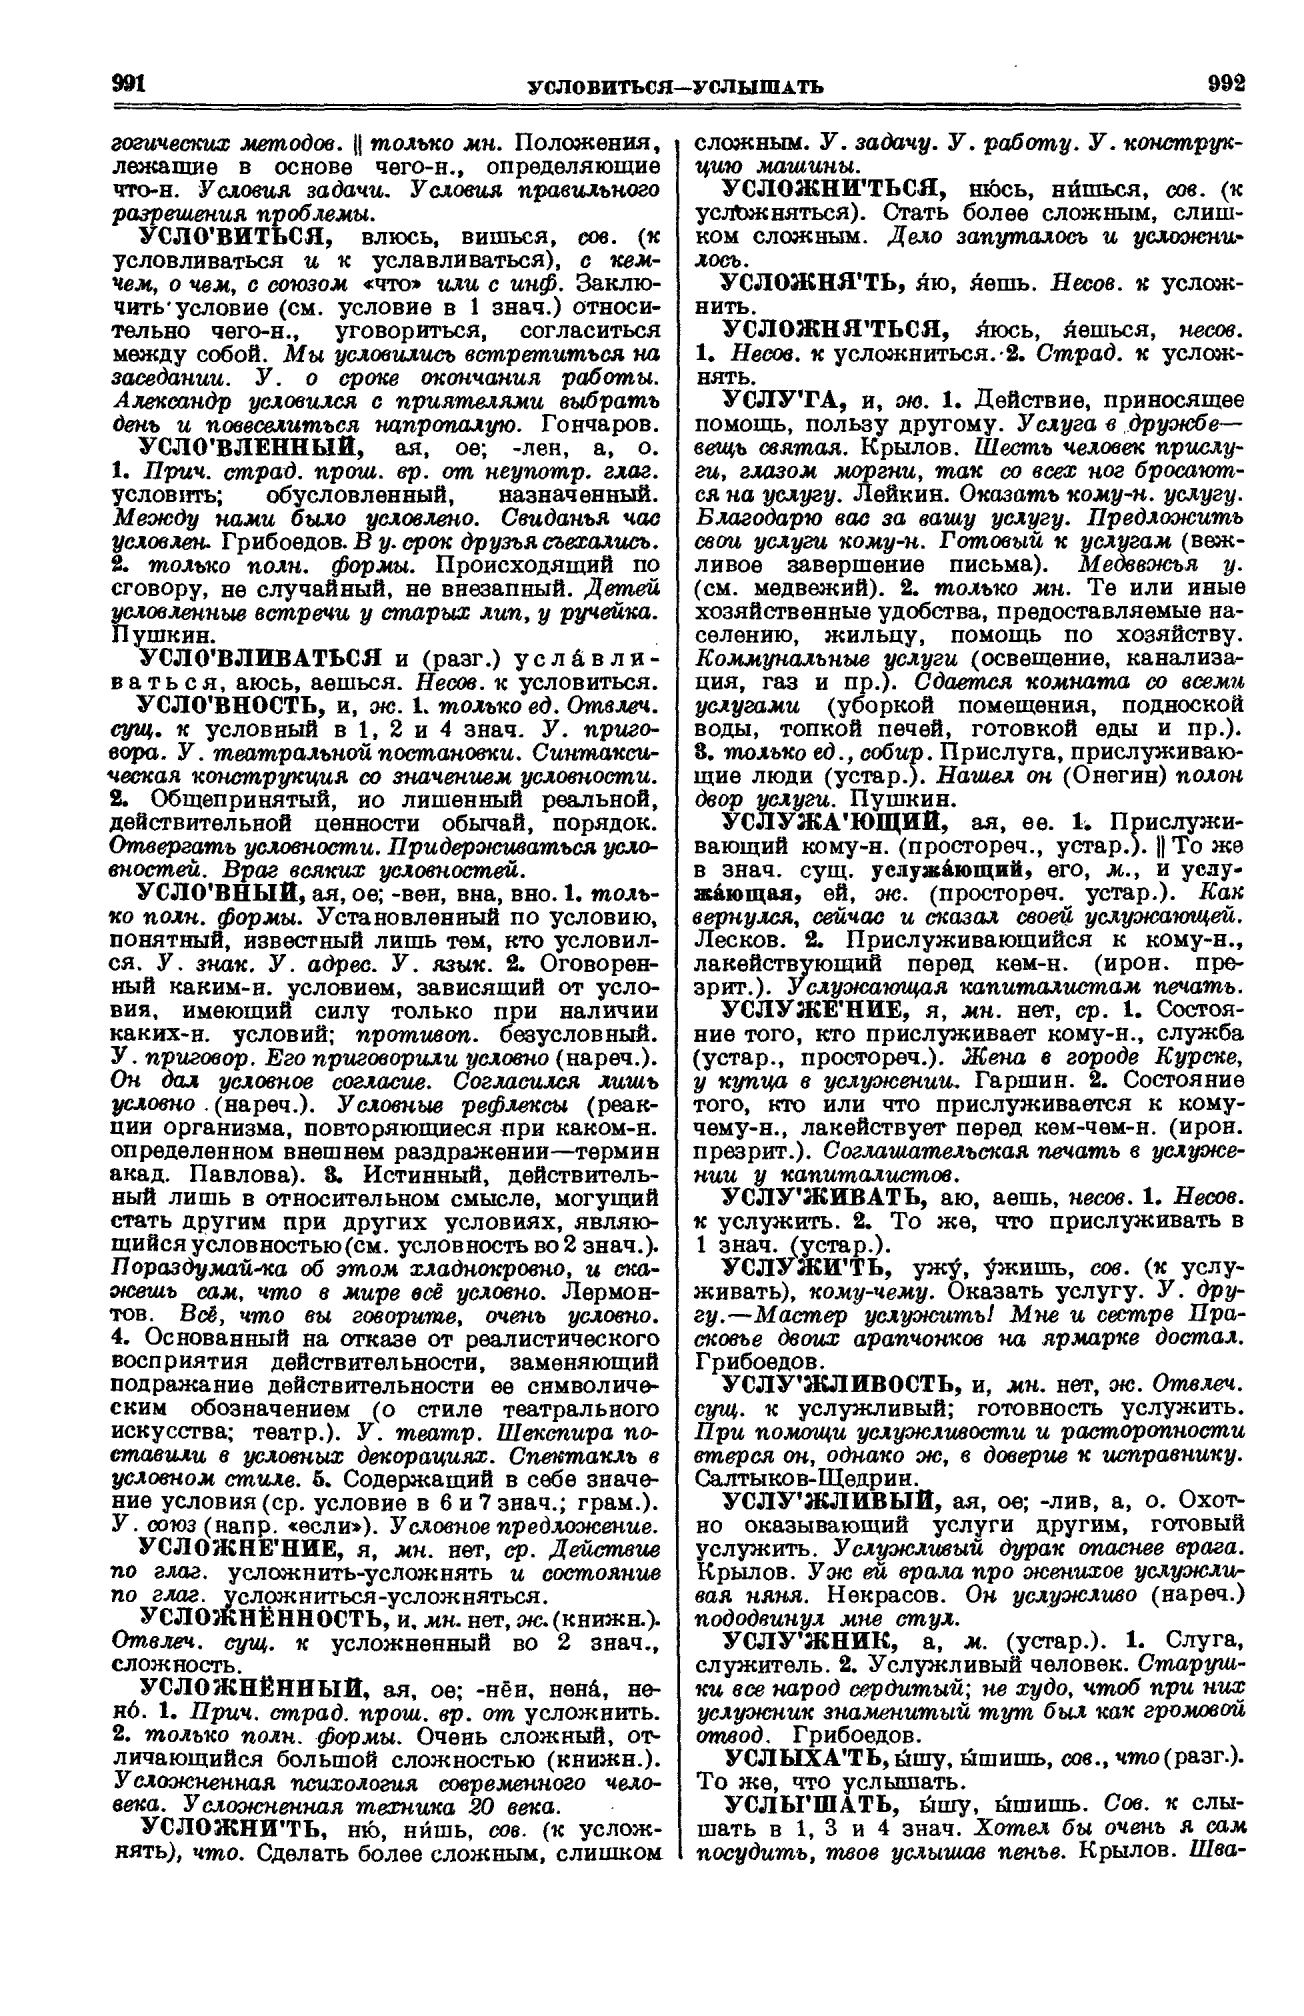 Фотокопия pdf / скан страницы 496 толкового словаря Ушакова (том 1)